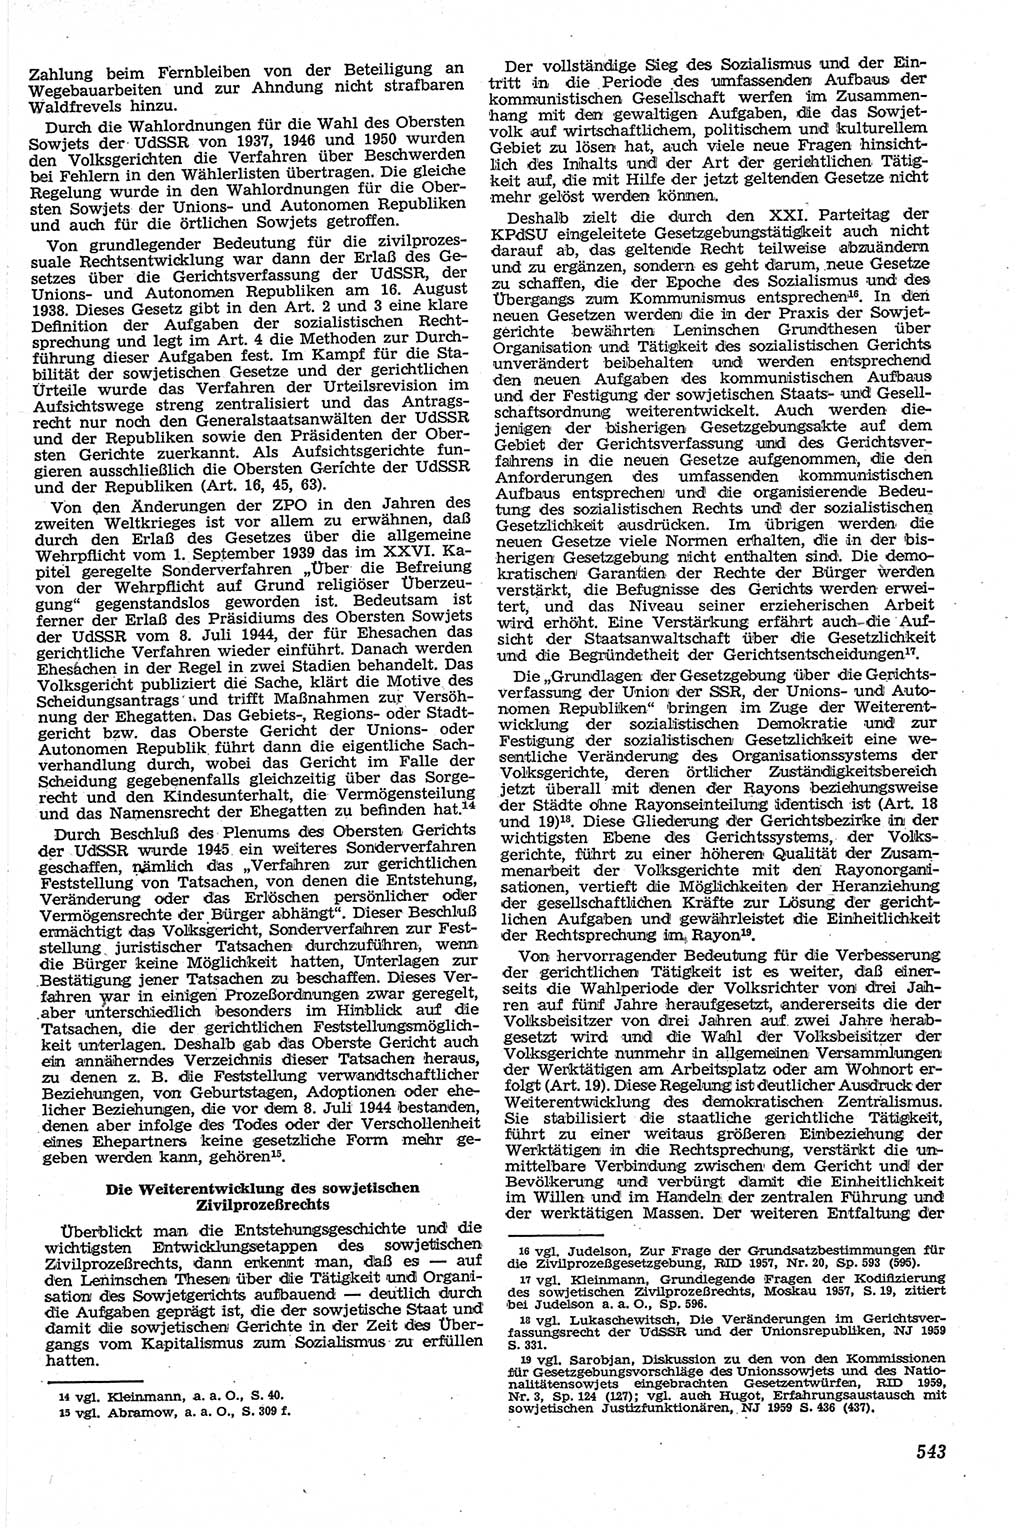 Neue Justiz (NJ), Zeitschrift für Recht und Rechtswissenschaft [Deutsche Demokratische Republik (DDR)], 13. Jahrgang 1959, Seite 543 (NJ DDR 1959, S. 543)